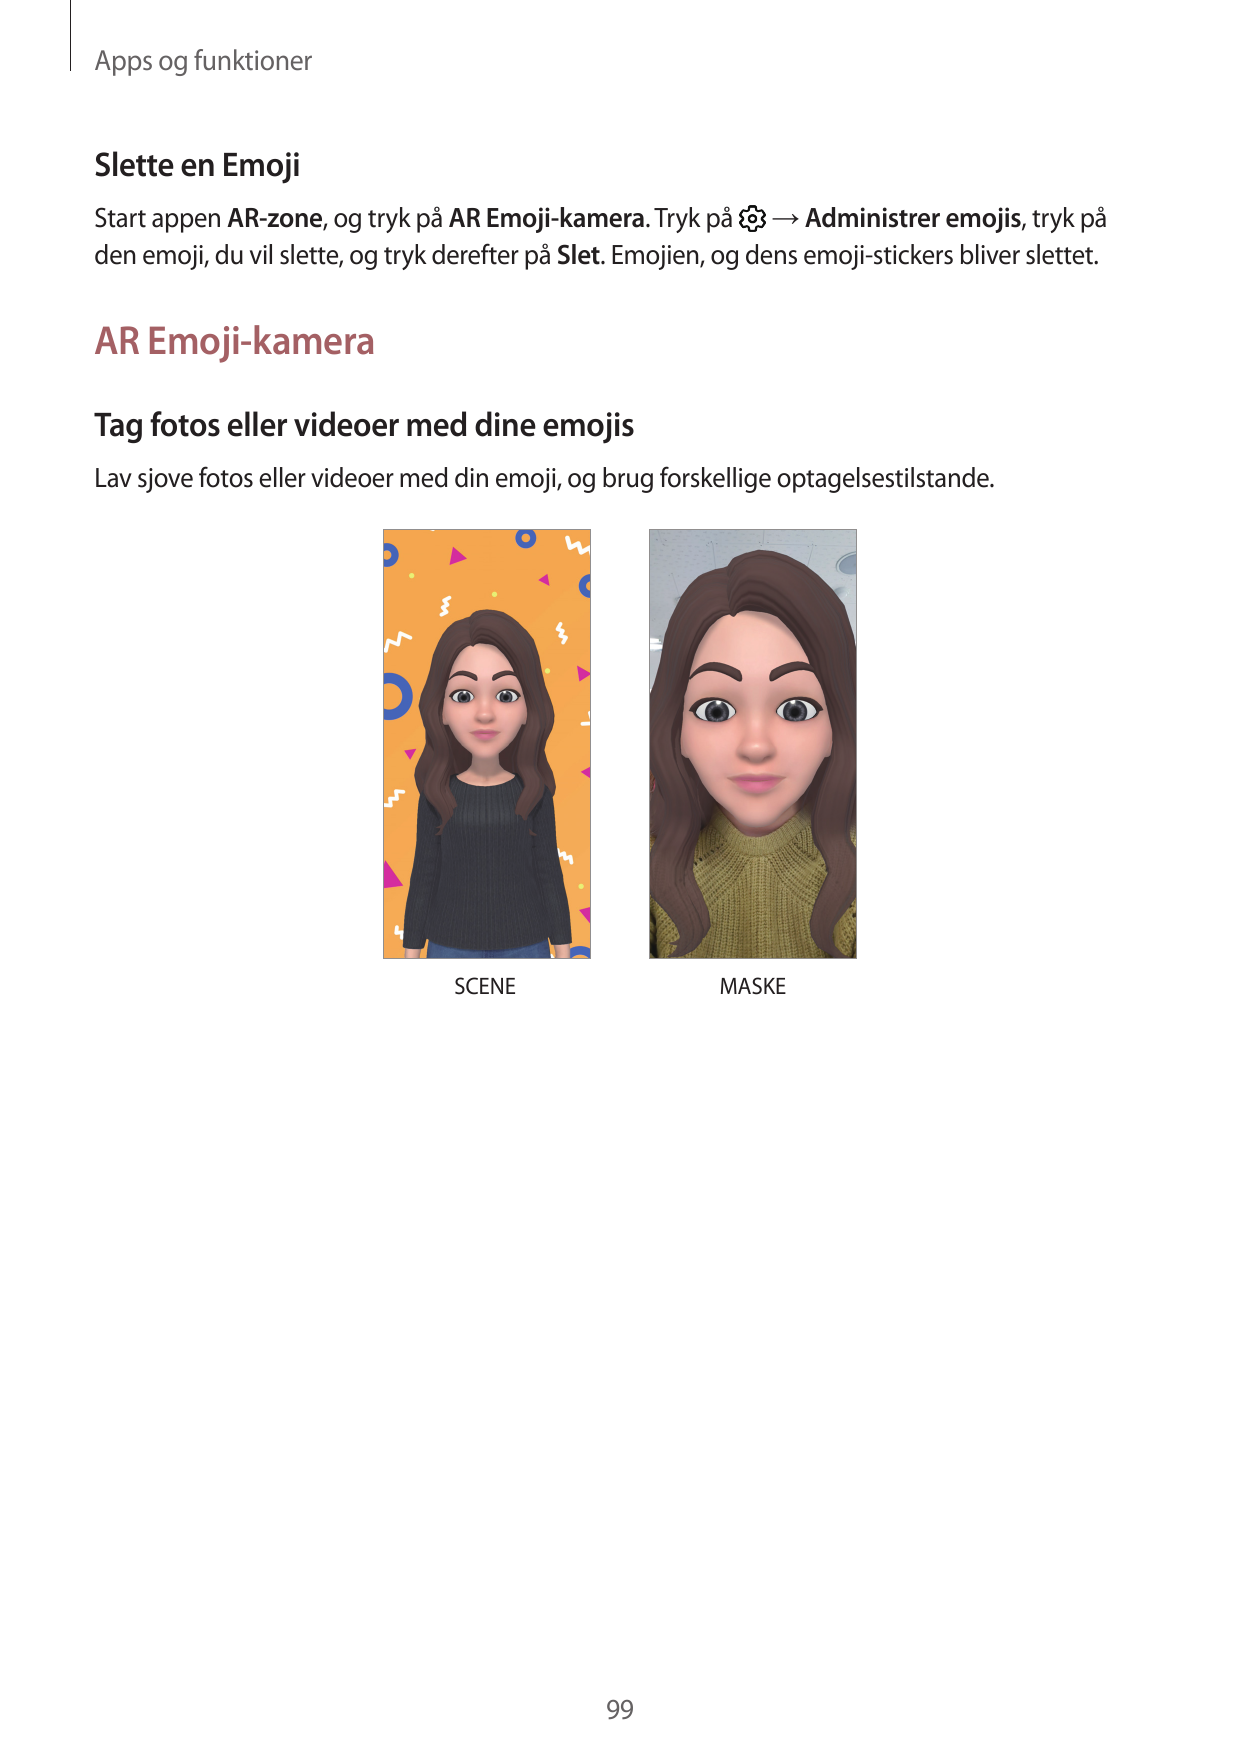 Apps og funktionerSlette en EmojiStart appen AR-zone, og tryk på AR Emoji-kamera. Tryk på → Administrer emojis, tryk påden emoji